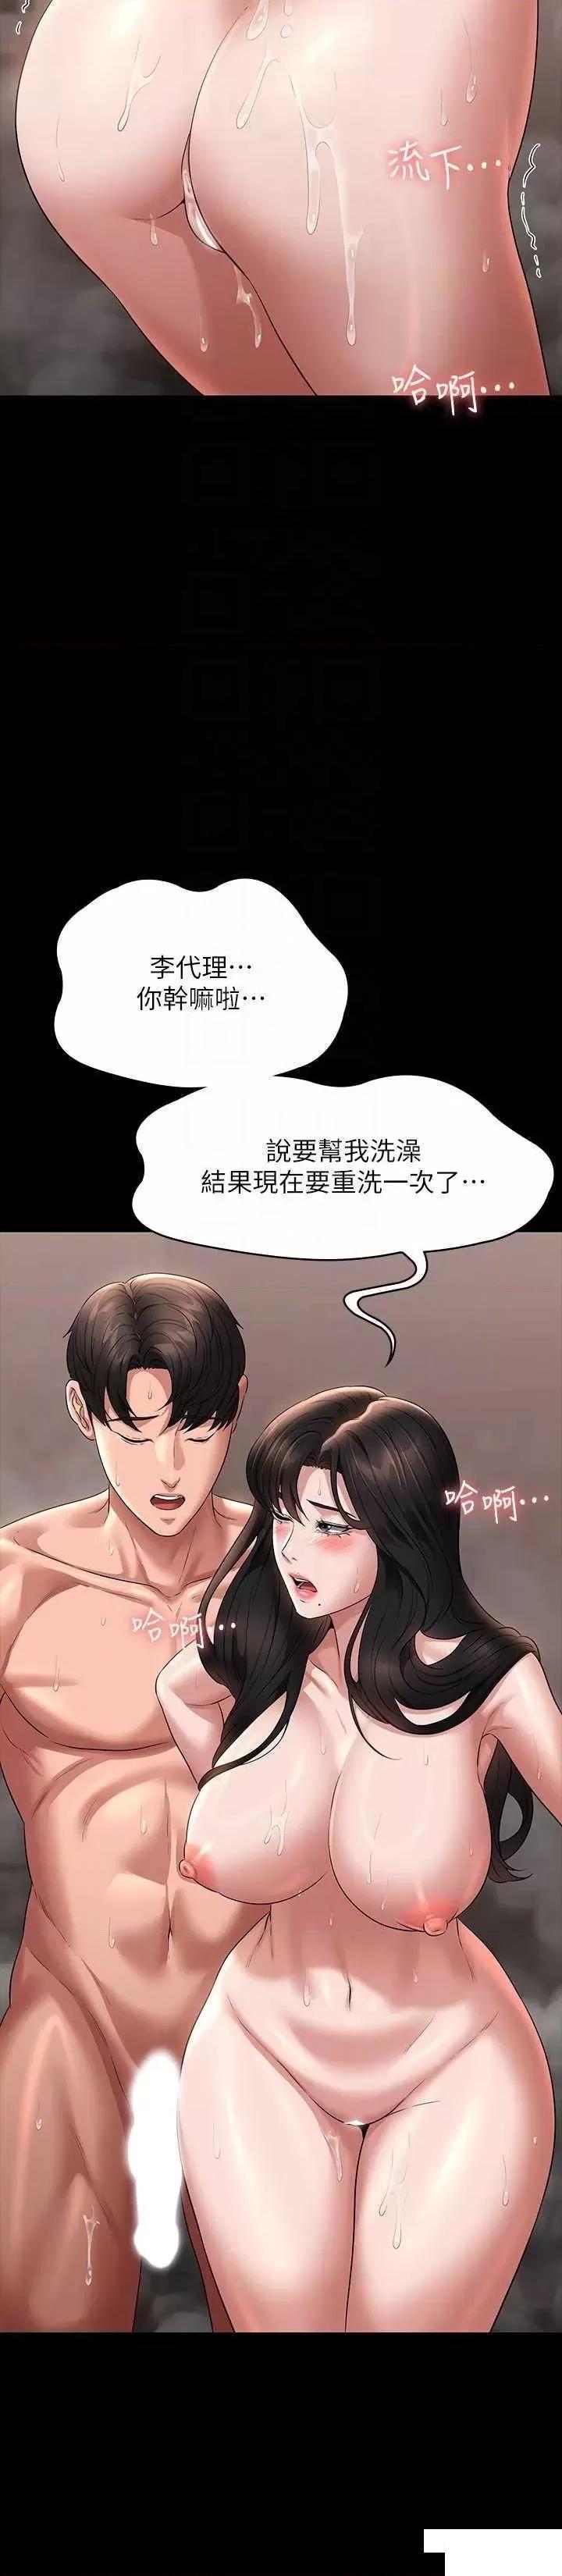 韩国污漫画 超級公務員 第100话_压制住贤宇的极品名器 18